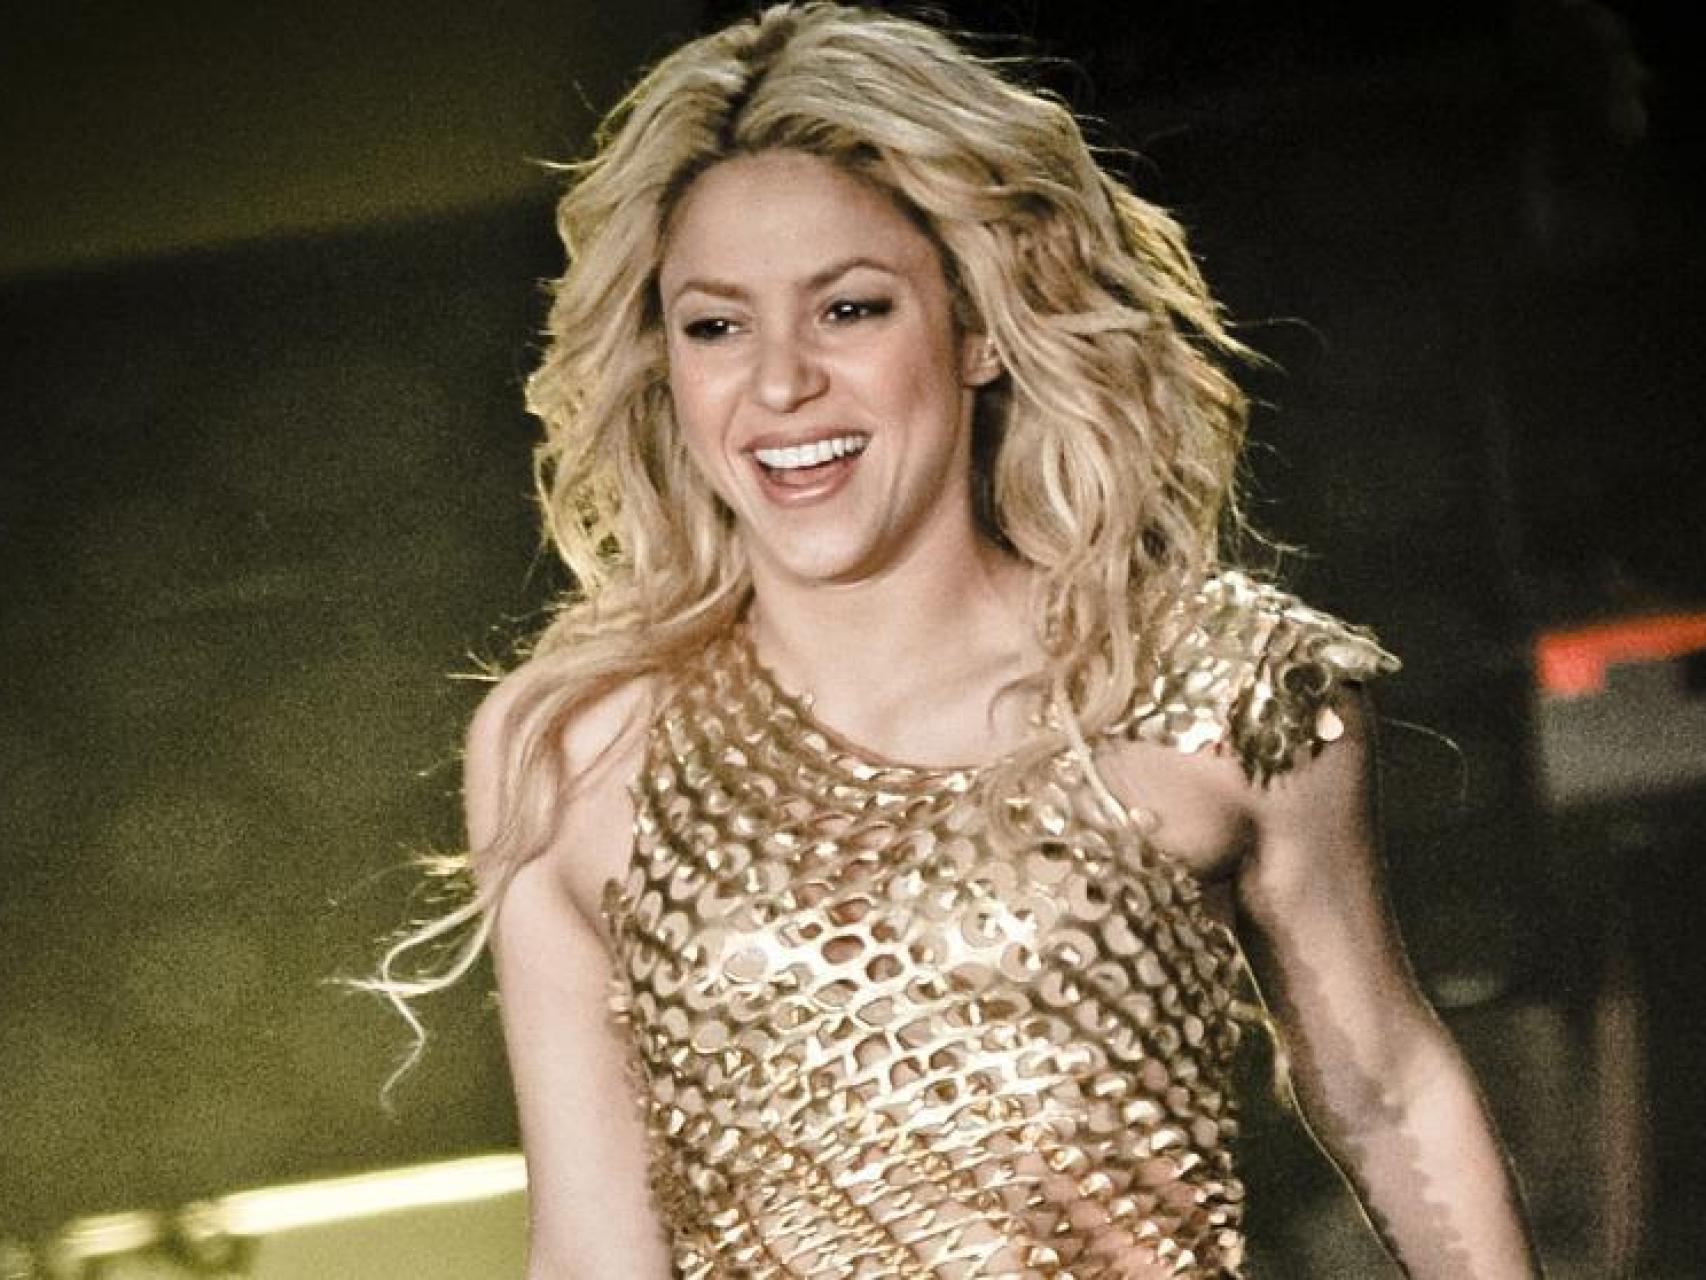 La cantante Shakira en concierto.